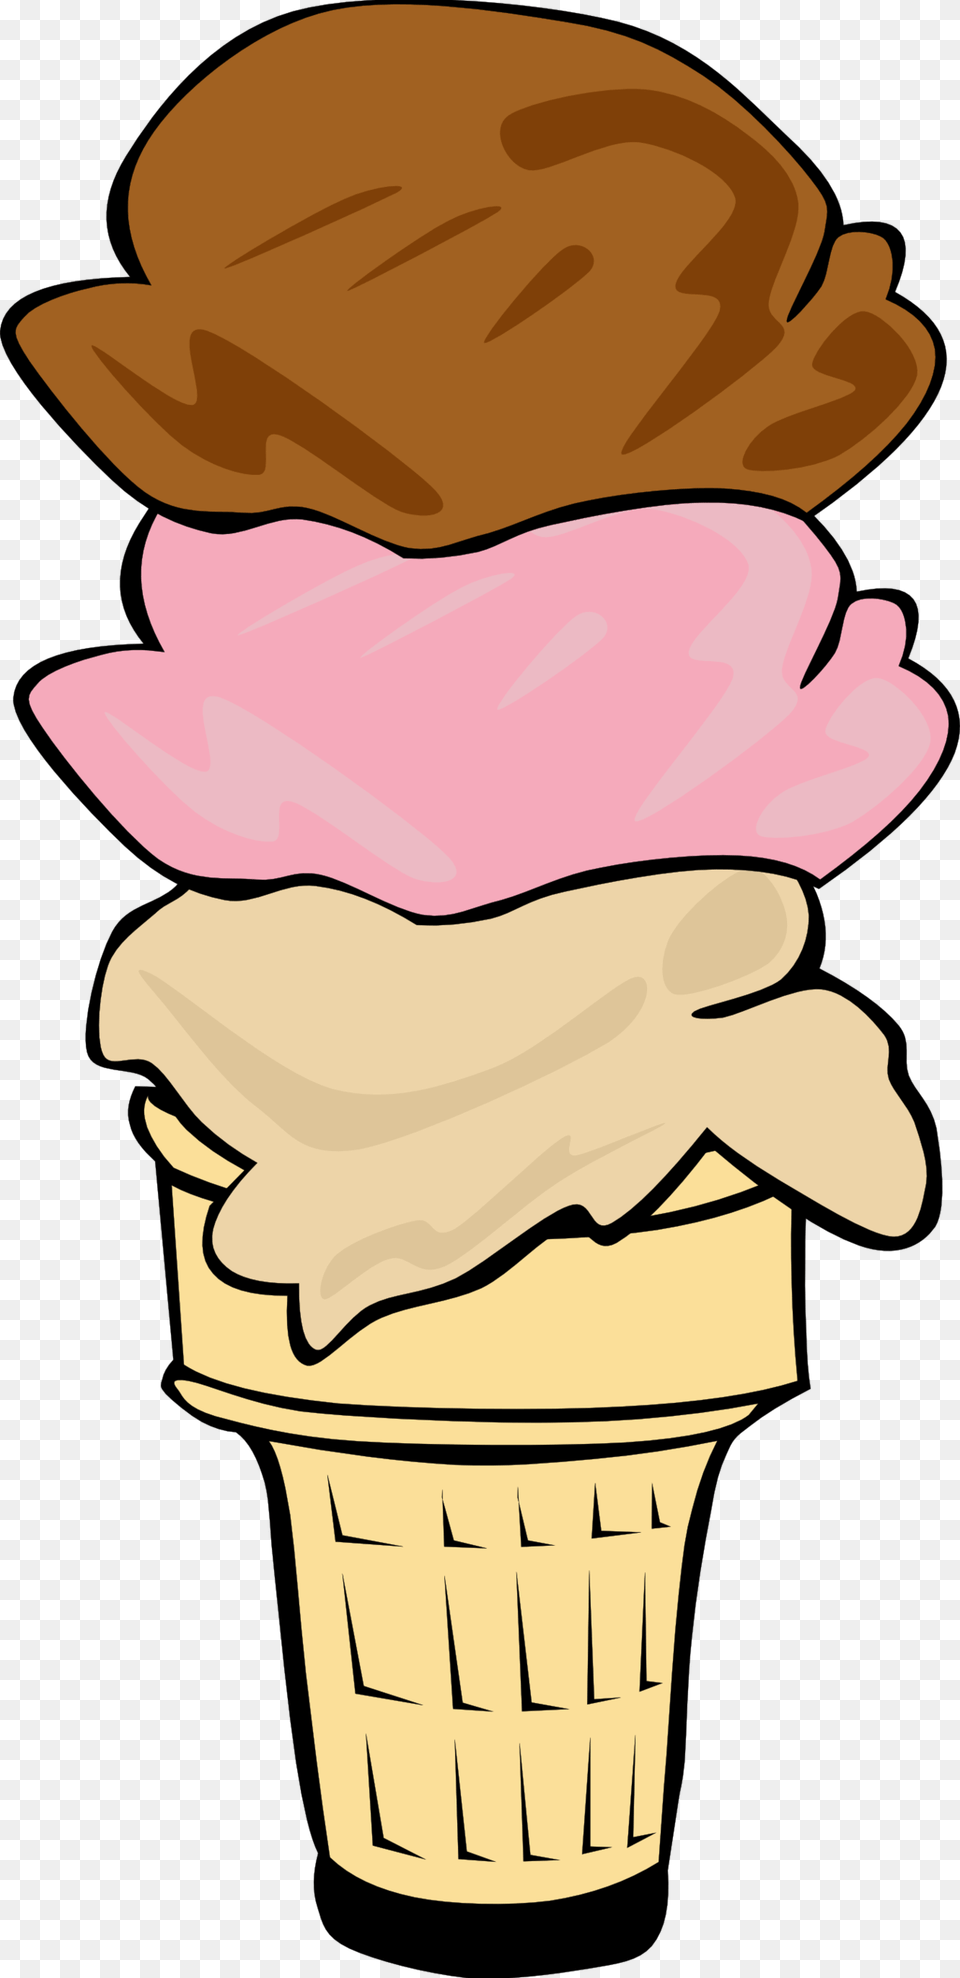 Ice Cream Cone Clip Art, Dessert, Food, Ice Cream, Soft Serve Ice Cream Png